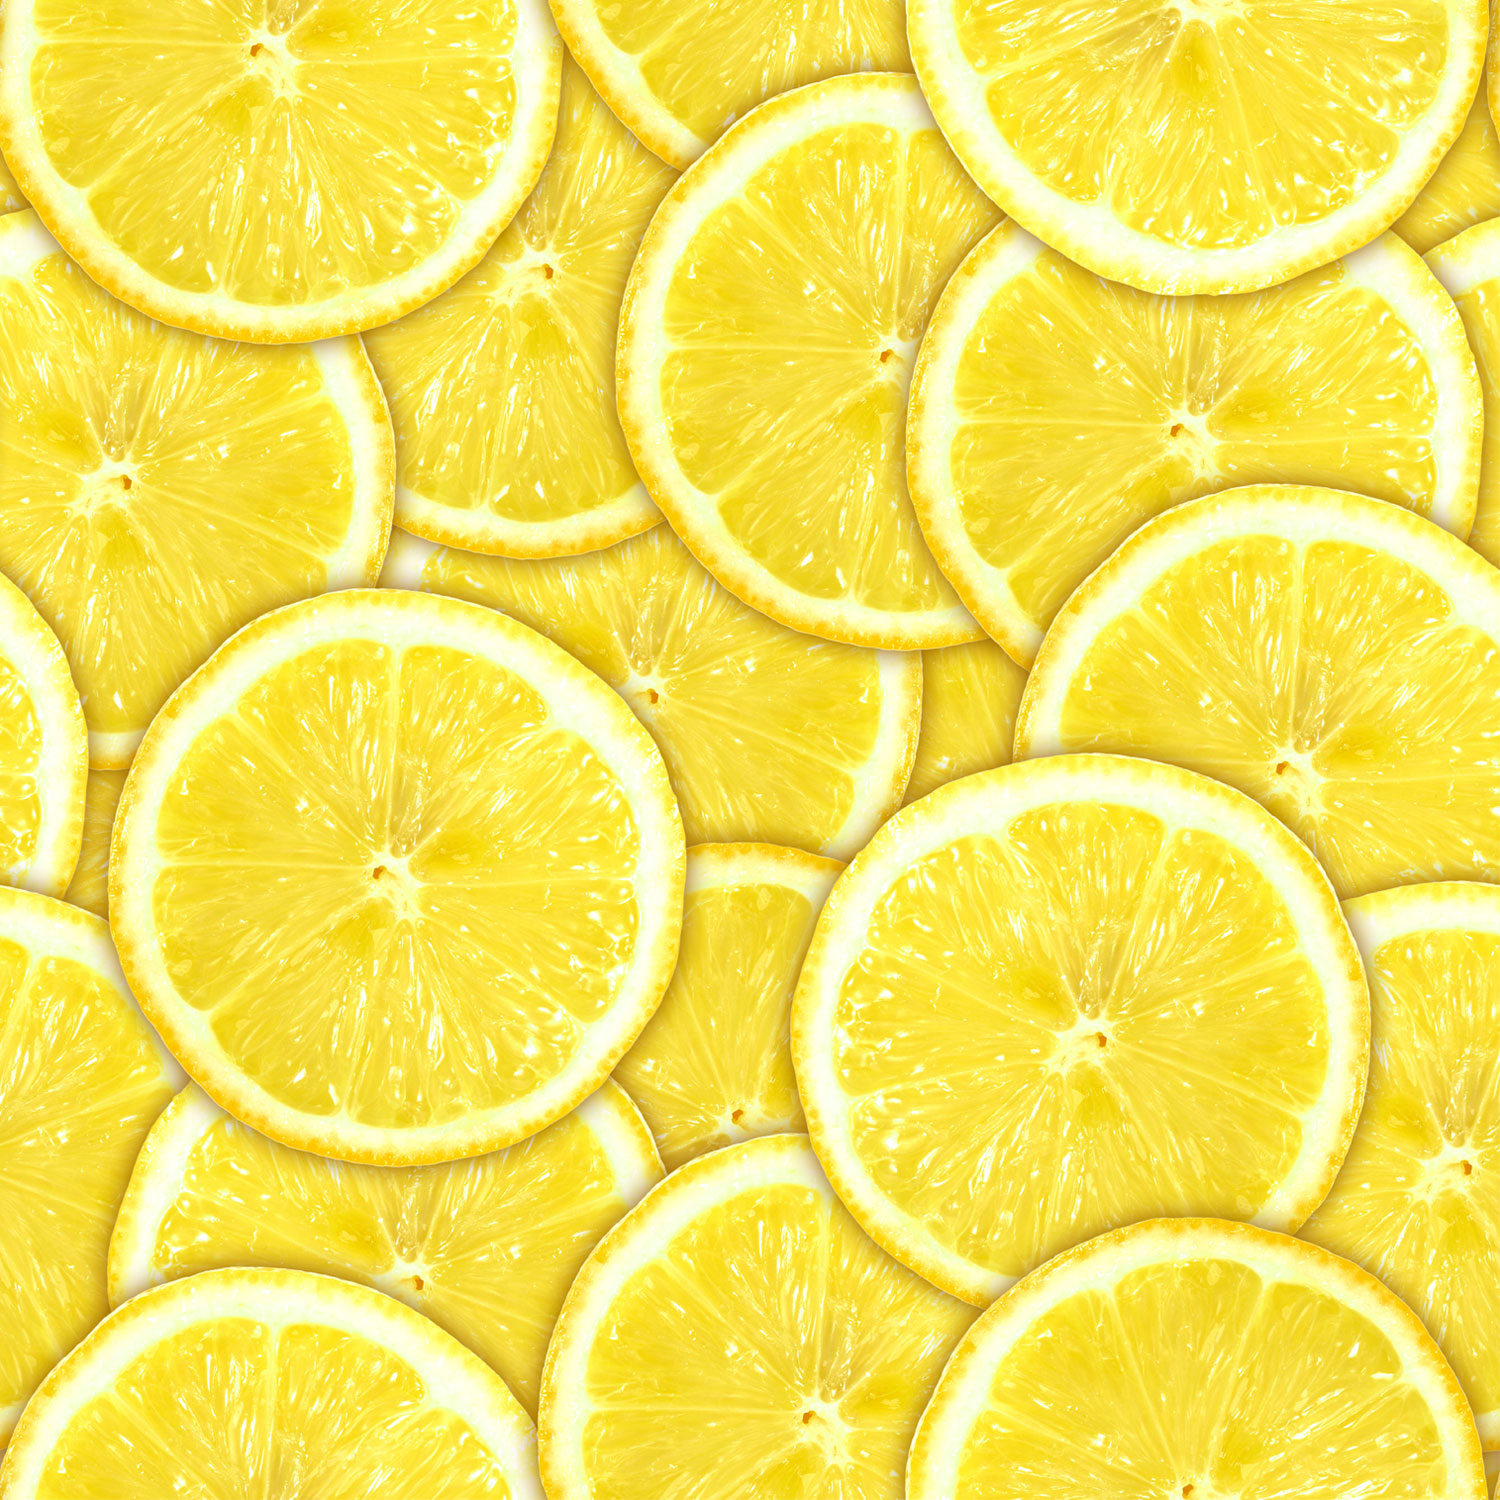 레몬 벽지,라임,레몬,감귤류,마이어 레몬,키 라임